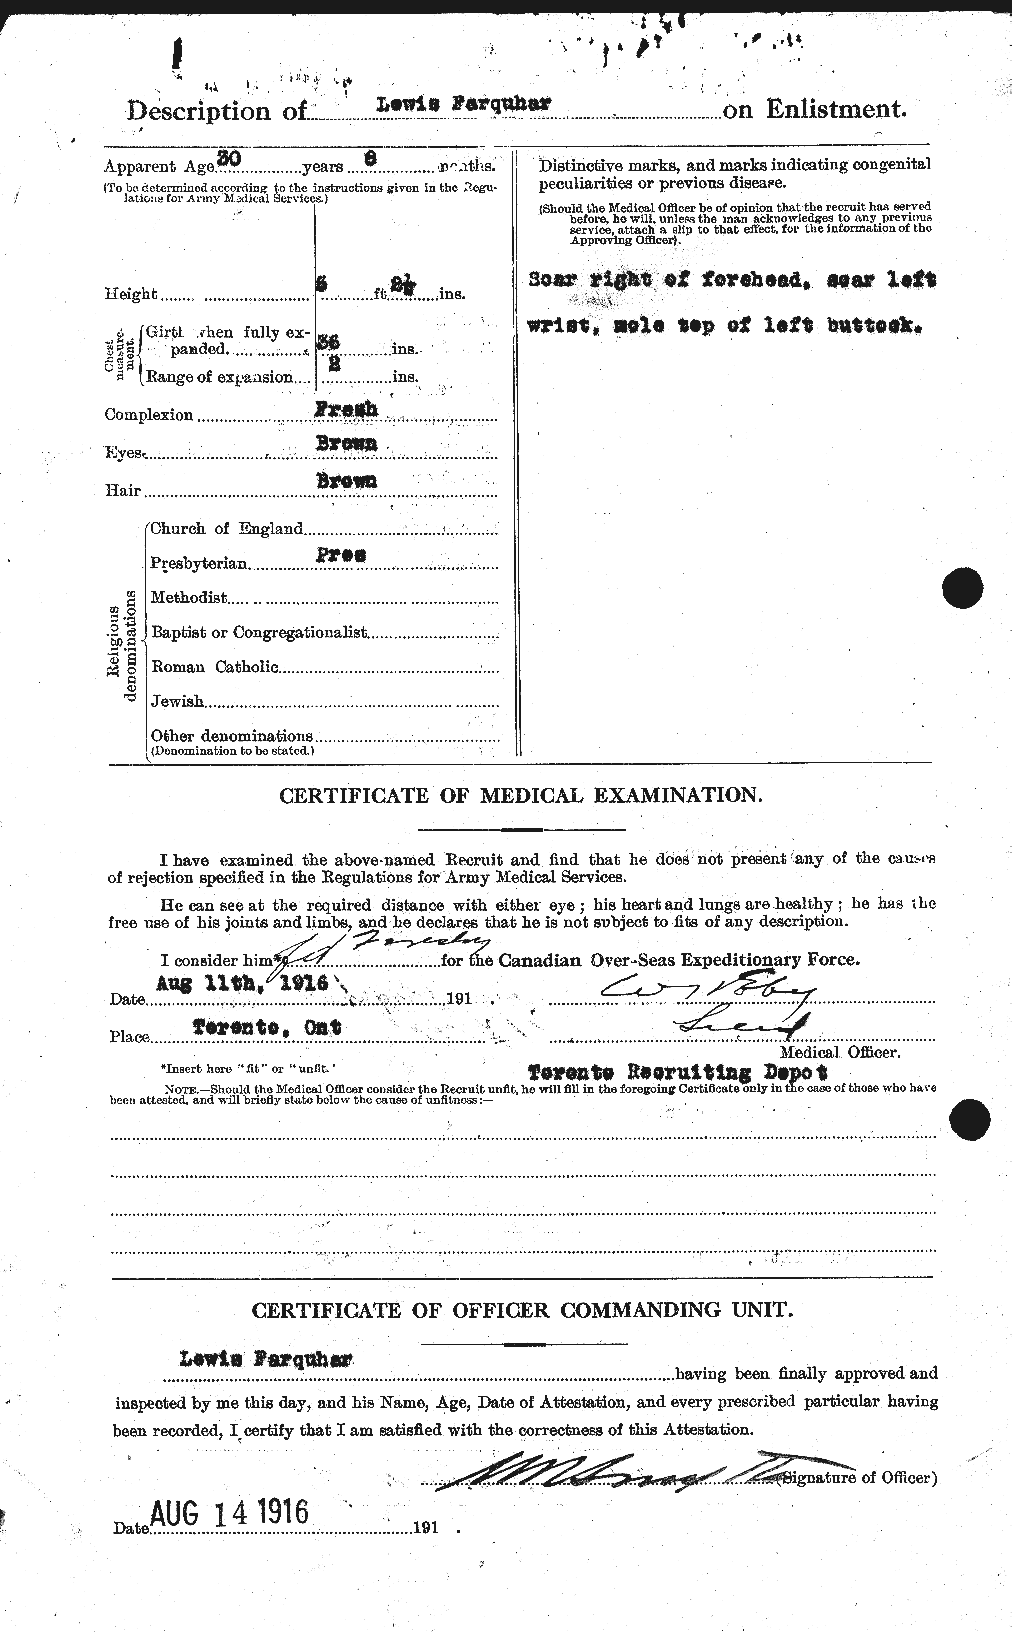 Dossiers du Personnel de la Première Guerre mondiale - CEC 318788b